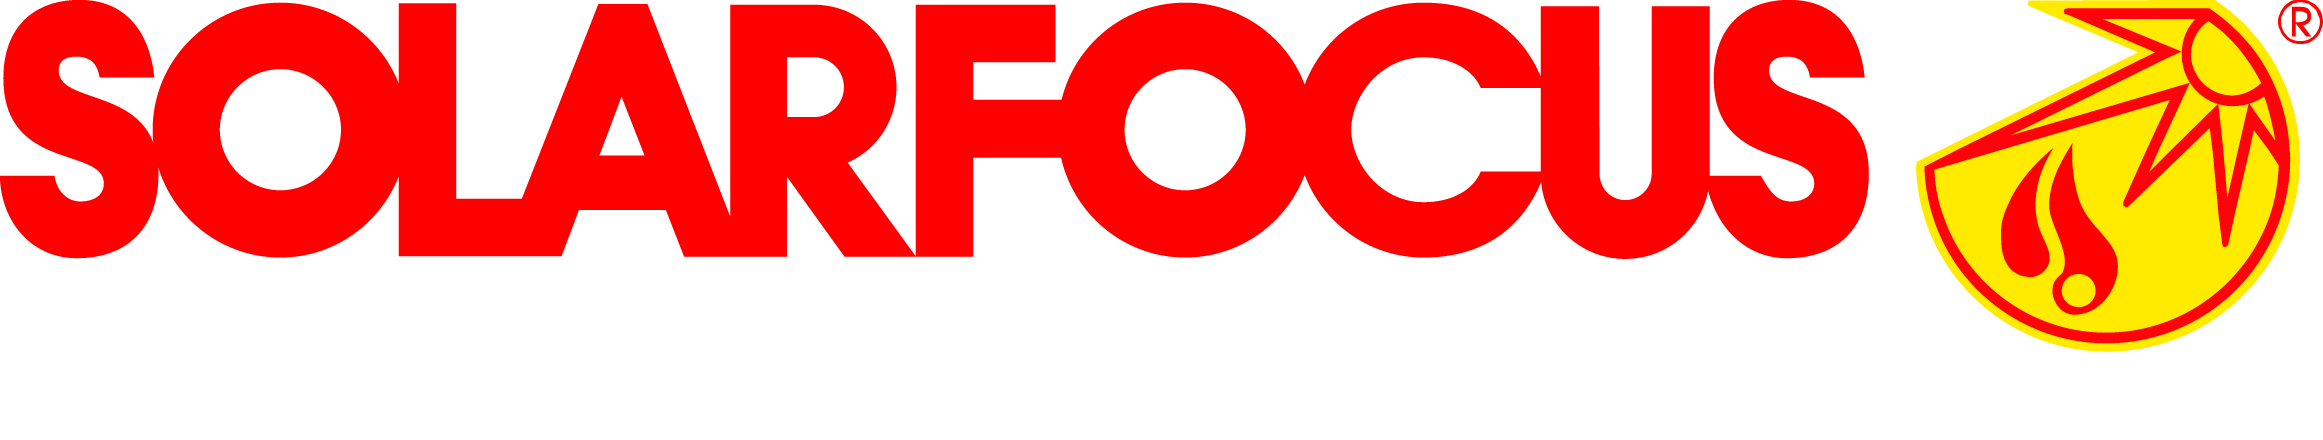 Solarfocus logo